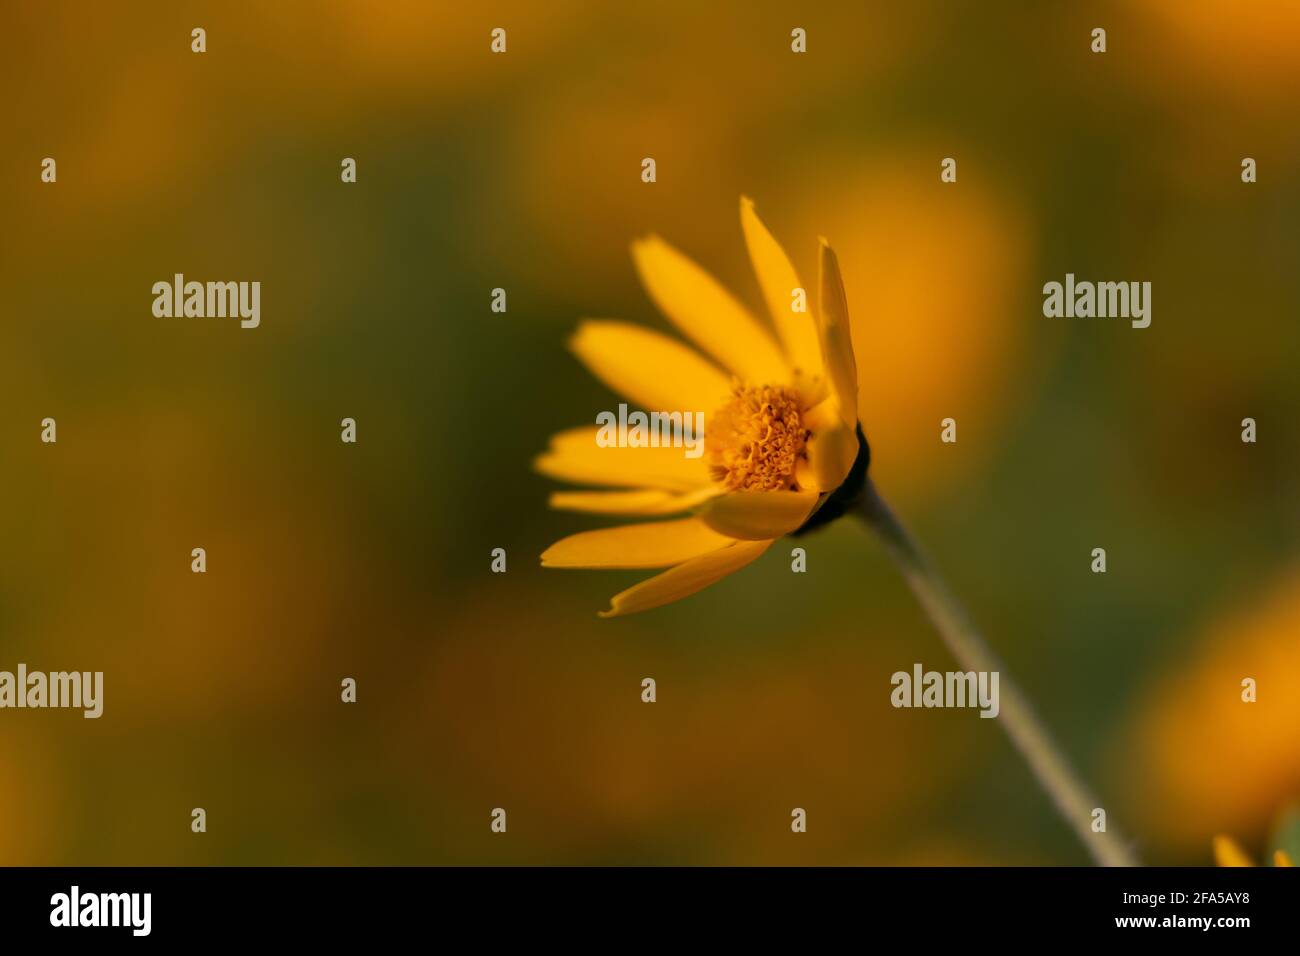 Fuoco selettivo e profondità di campo ridotta dell'immagine isolata fiore giallo in fiore all'arrivo della stagione primaverile Foto Stock